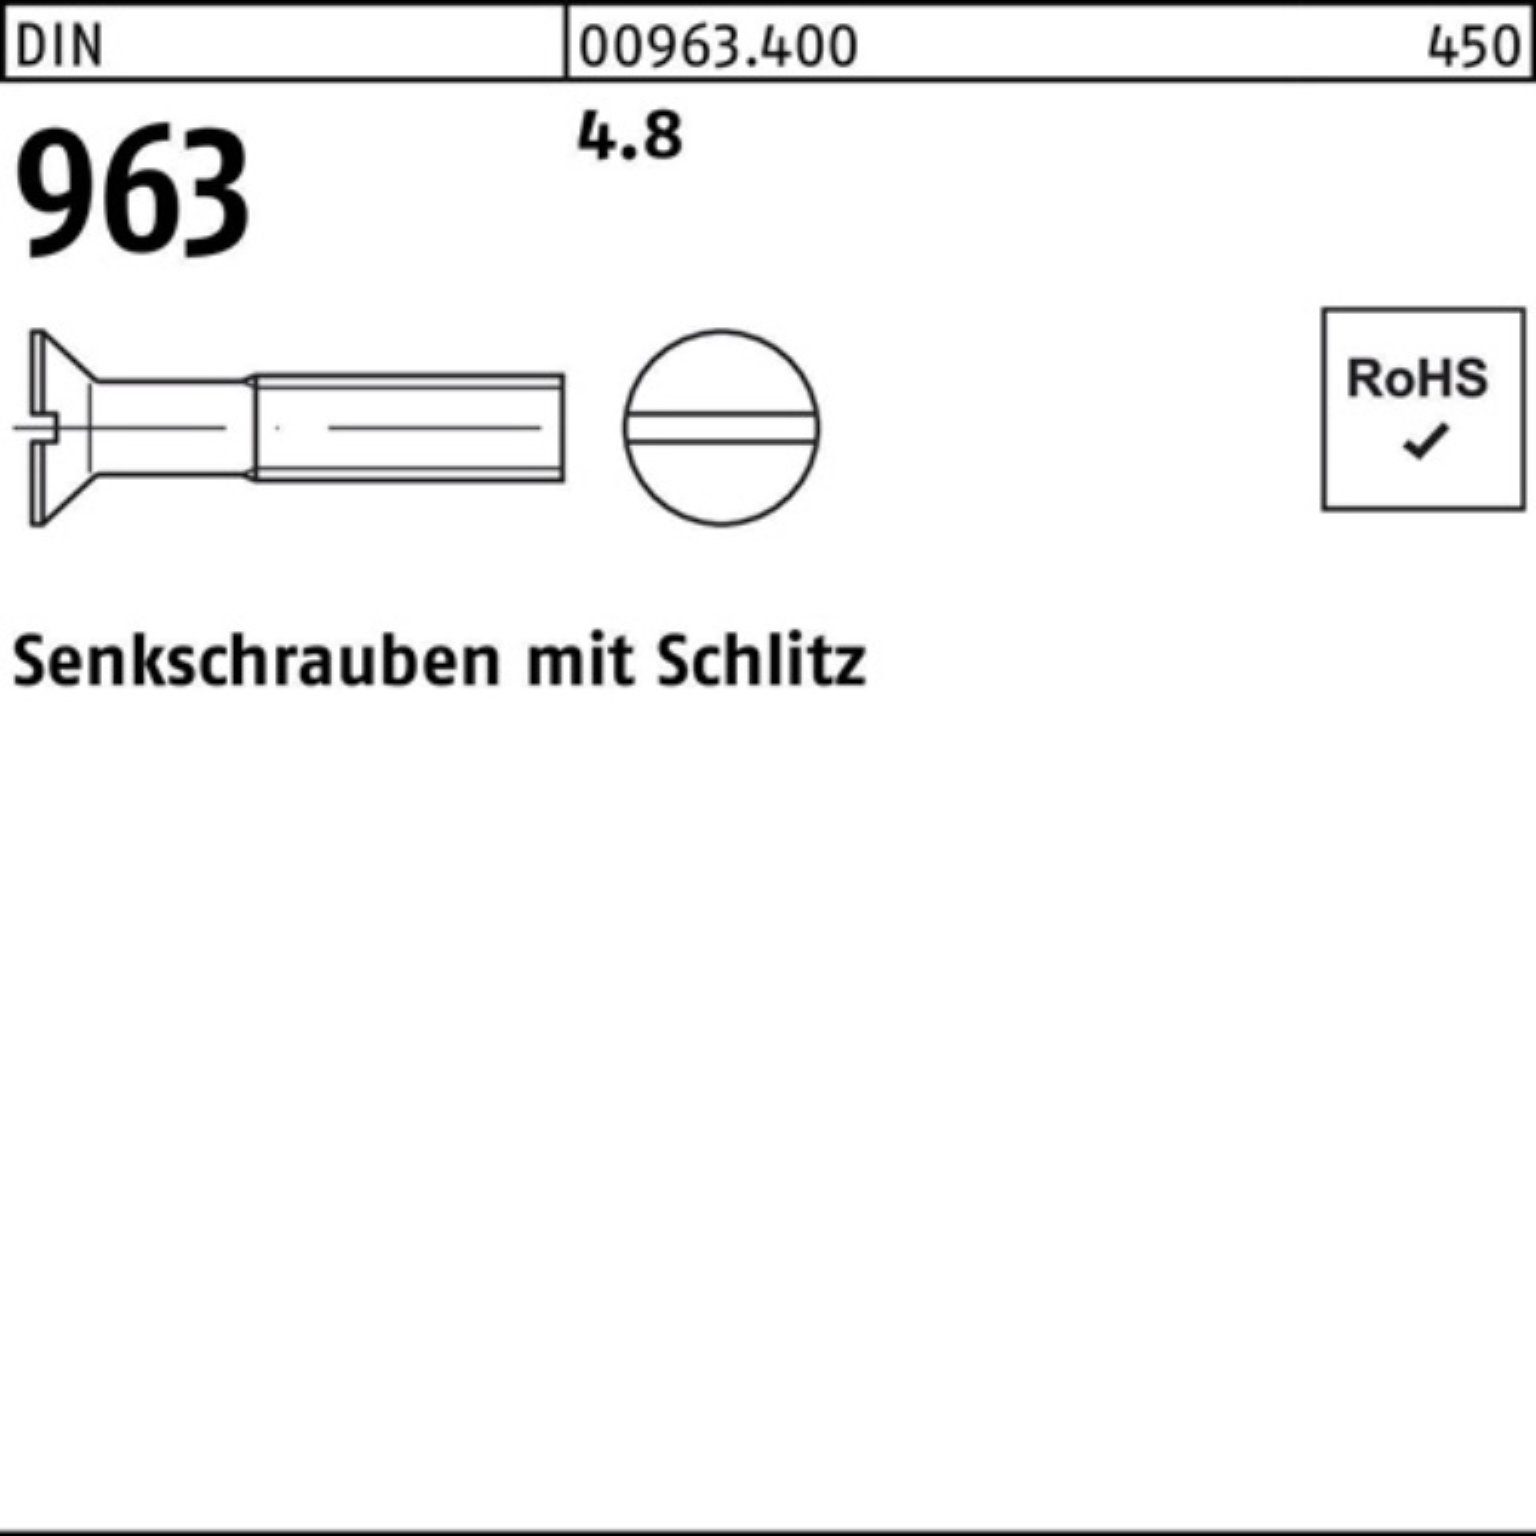 Reyher Senkschraube 2000er Pack Senkschraube M4x 2000 Stück Schlitz DIN 20 963 DIN 4.8 96